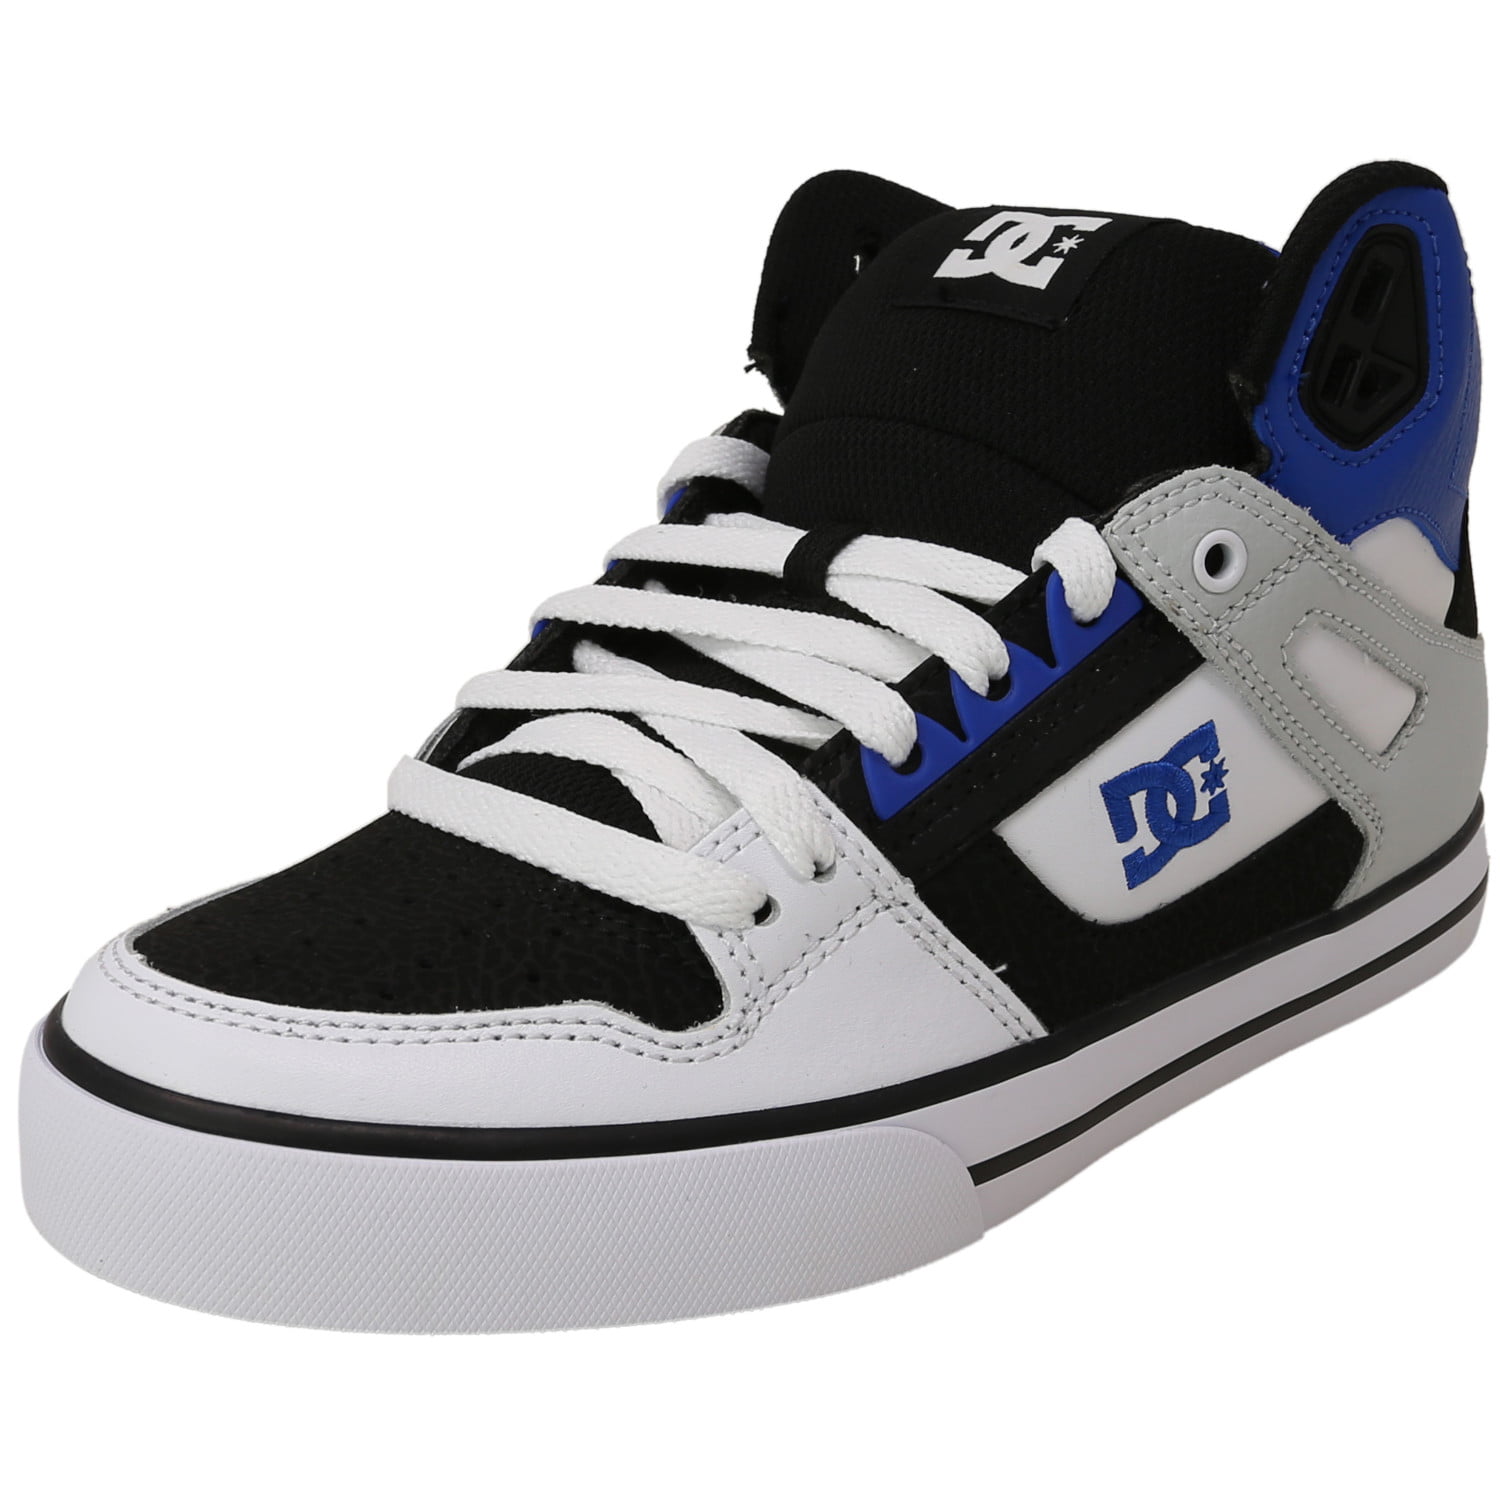 DC Men's Pure High-top Wc Skate Shoe Choose SZ/Color 